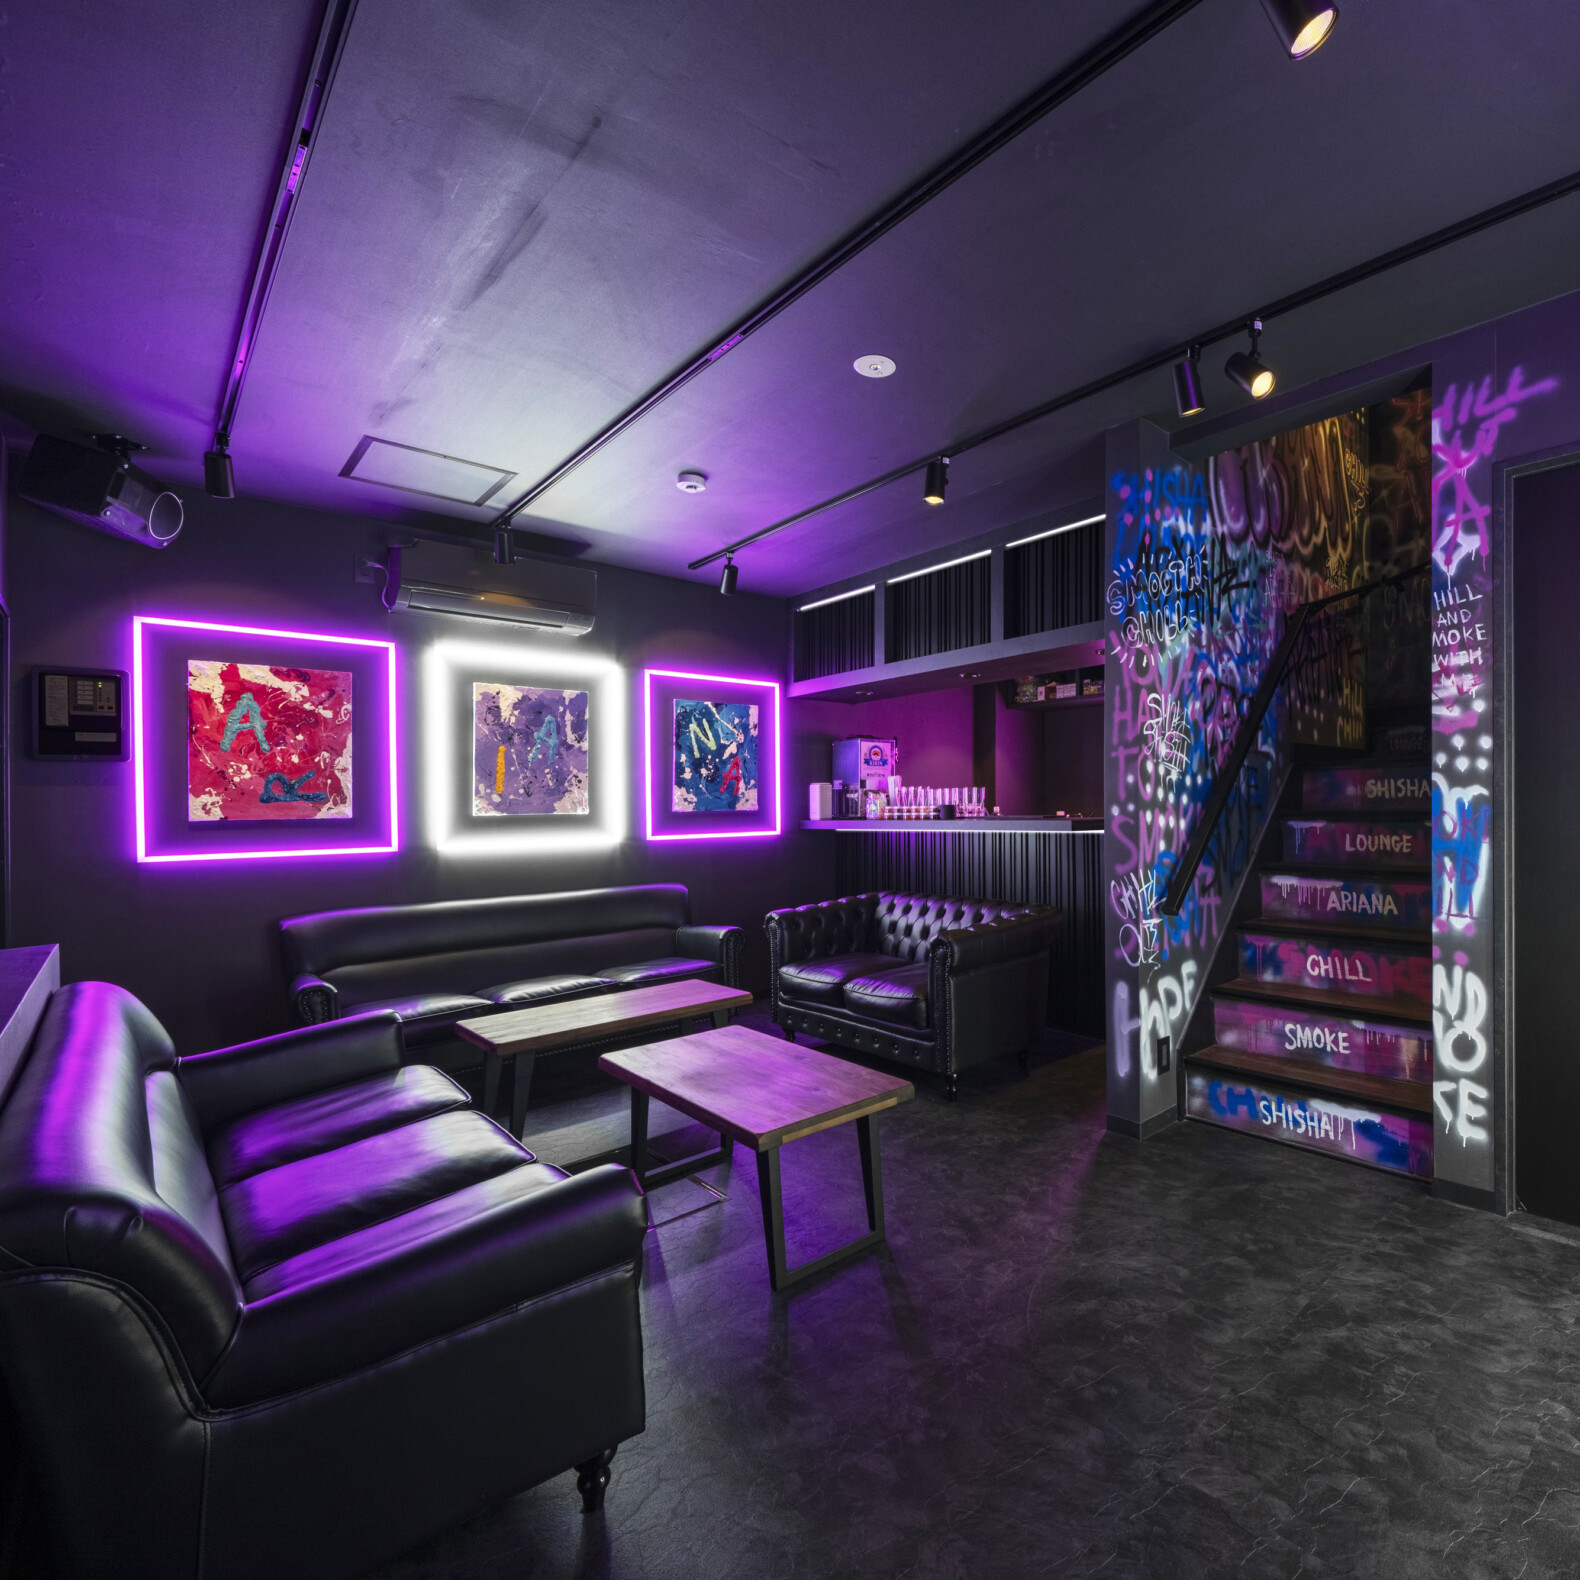 Shisha Lounge ARIANA | GARAN デザイン・設計実績